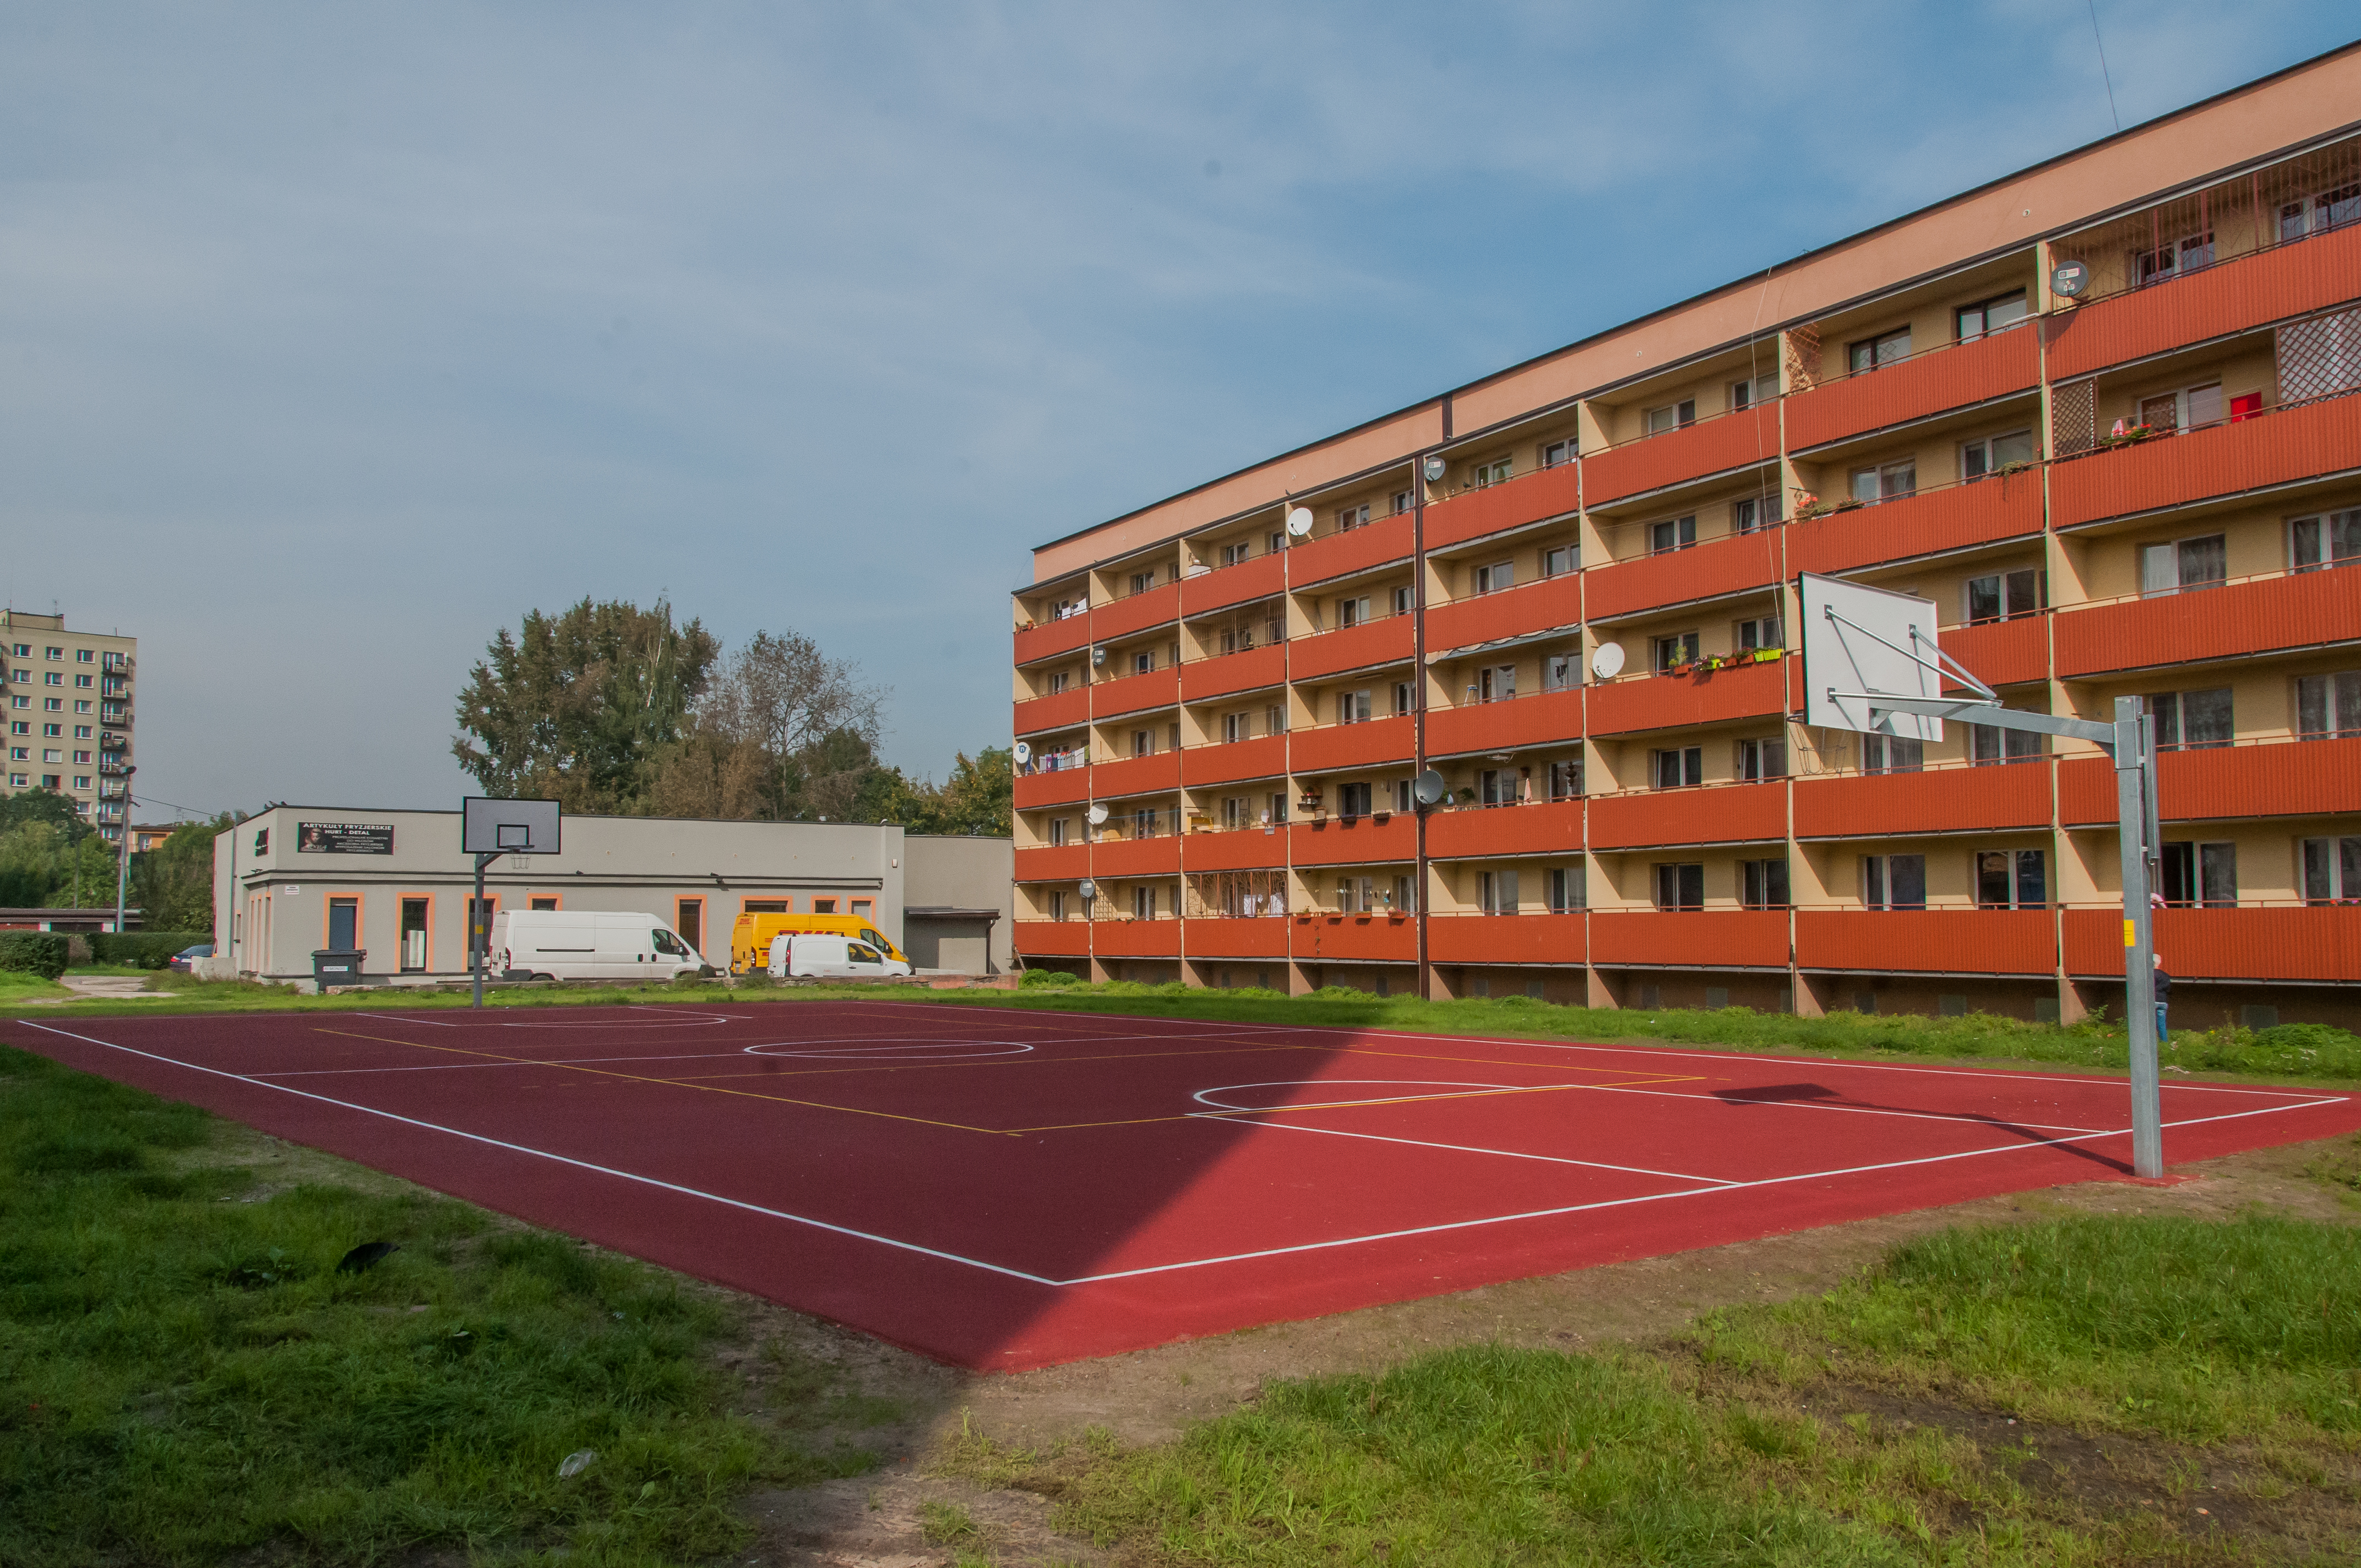 Basketballplatz in Trynek